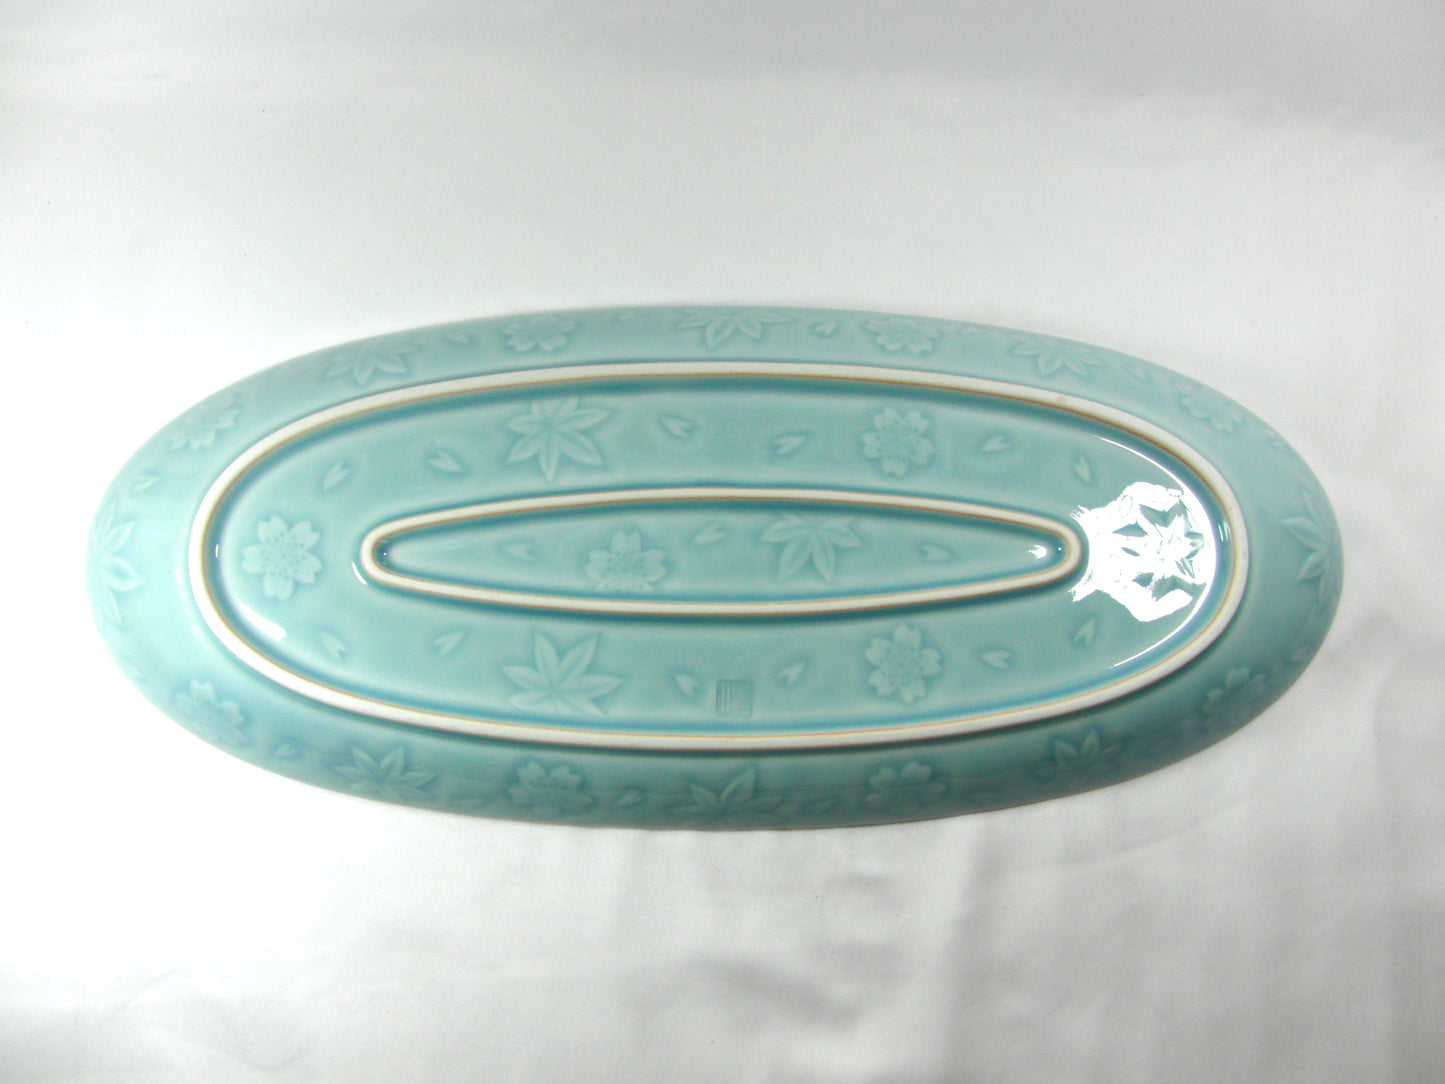 3101-0040　有田焼 華山窯 青磁尺2寸皿
（36.2×15.3×H2.7）